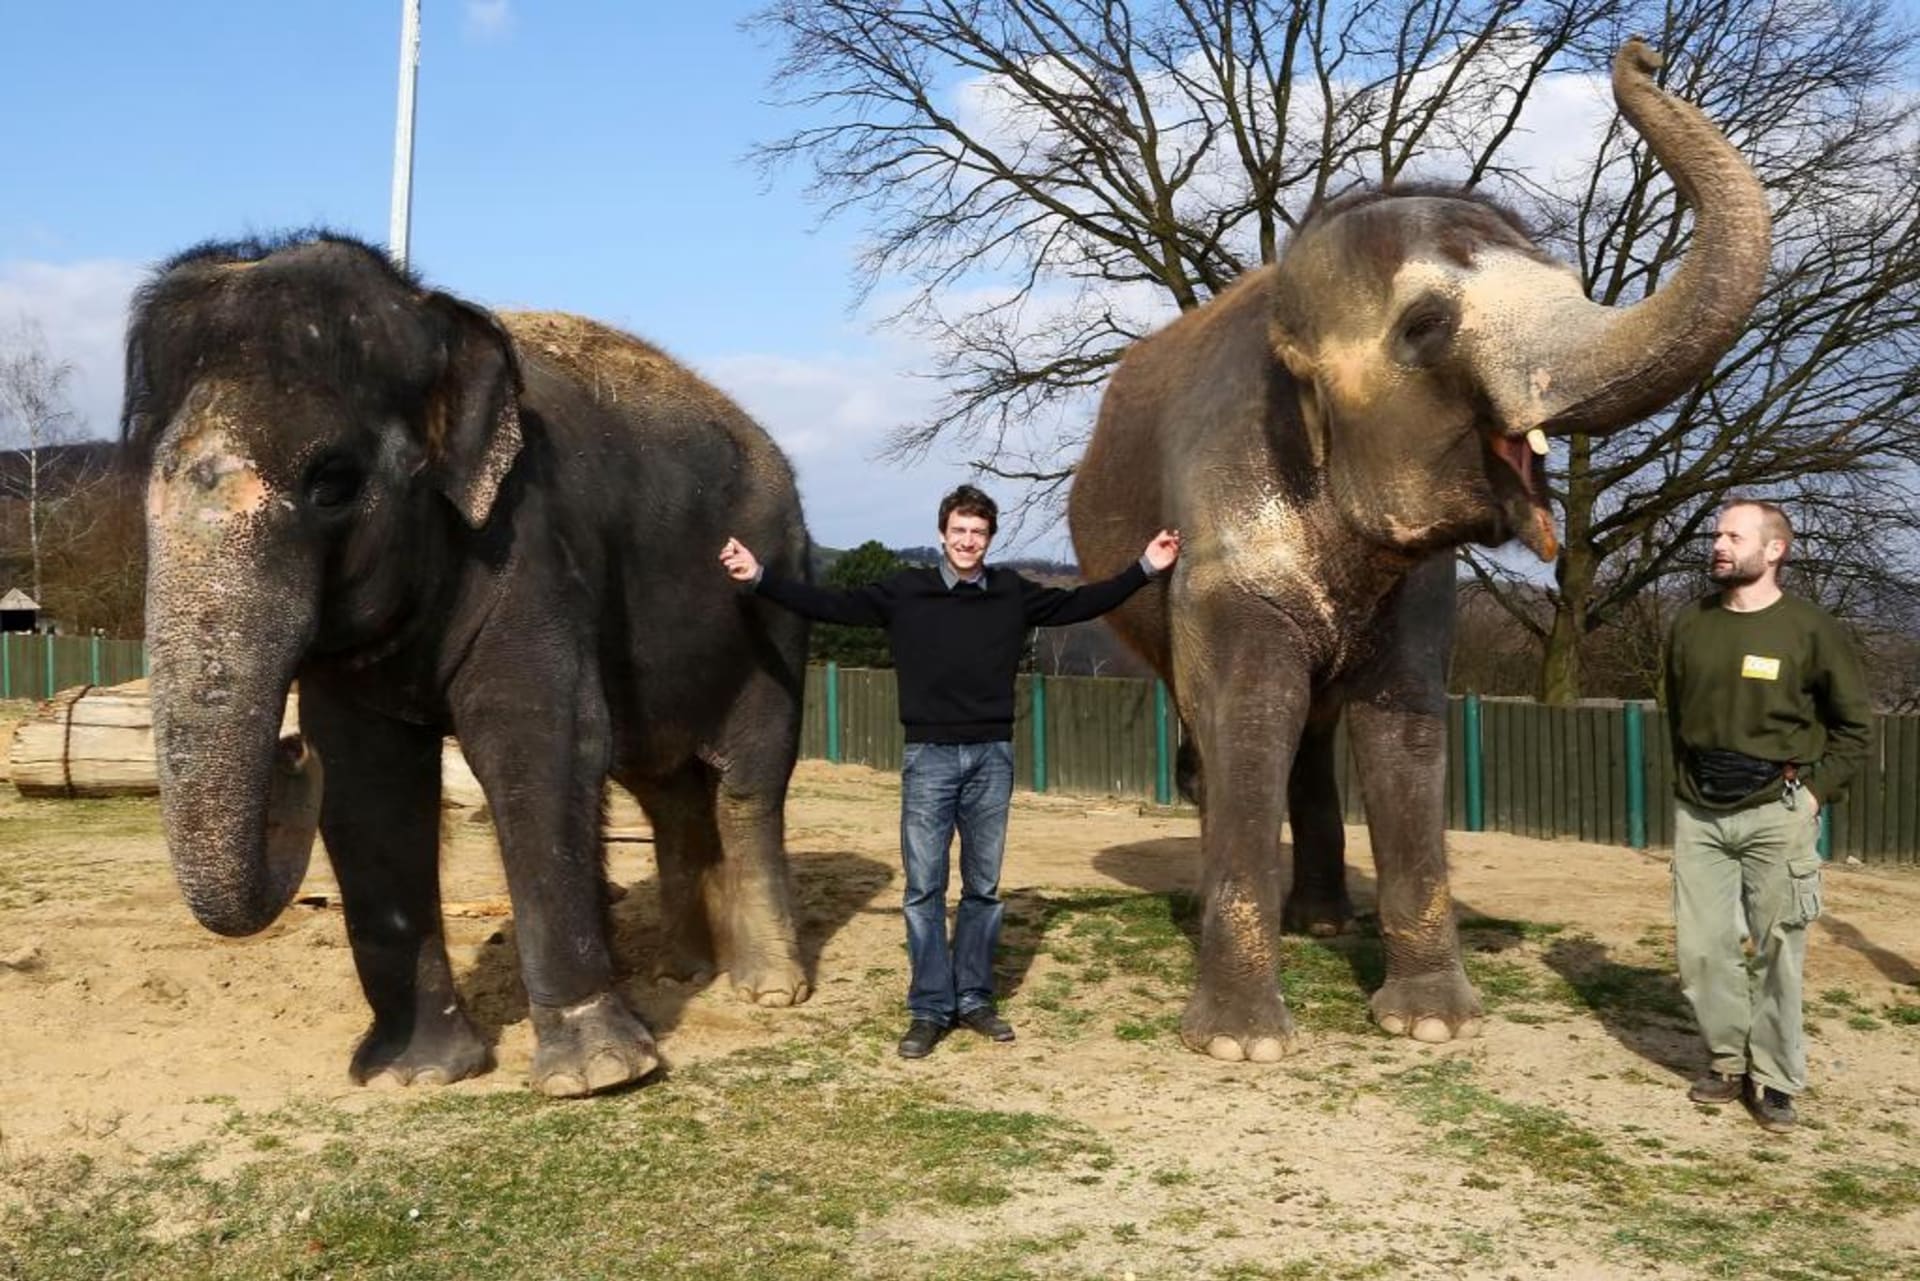 "Fascinují mě sloni," říká Martin Kraus